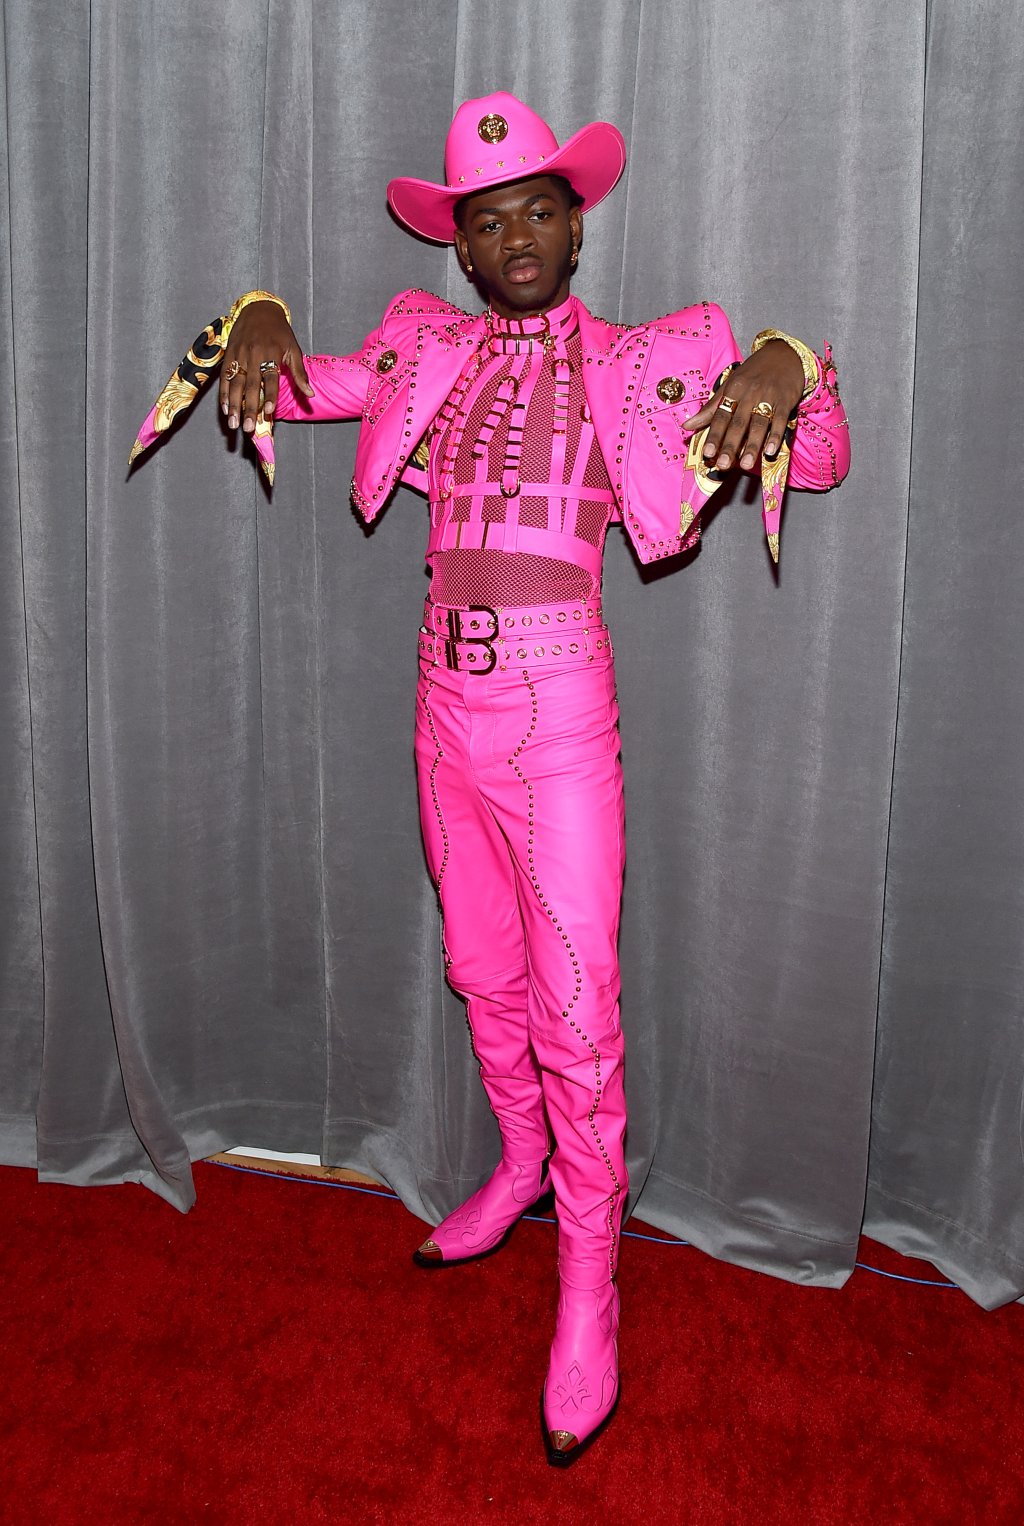 Lil Nas X no red carpet do GRAMMY Awards 2020 com terno e chapéu cor-de-rosa e com expressão séria exibindo as mãos